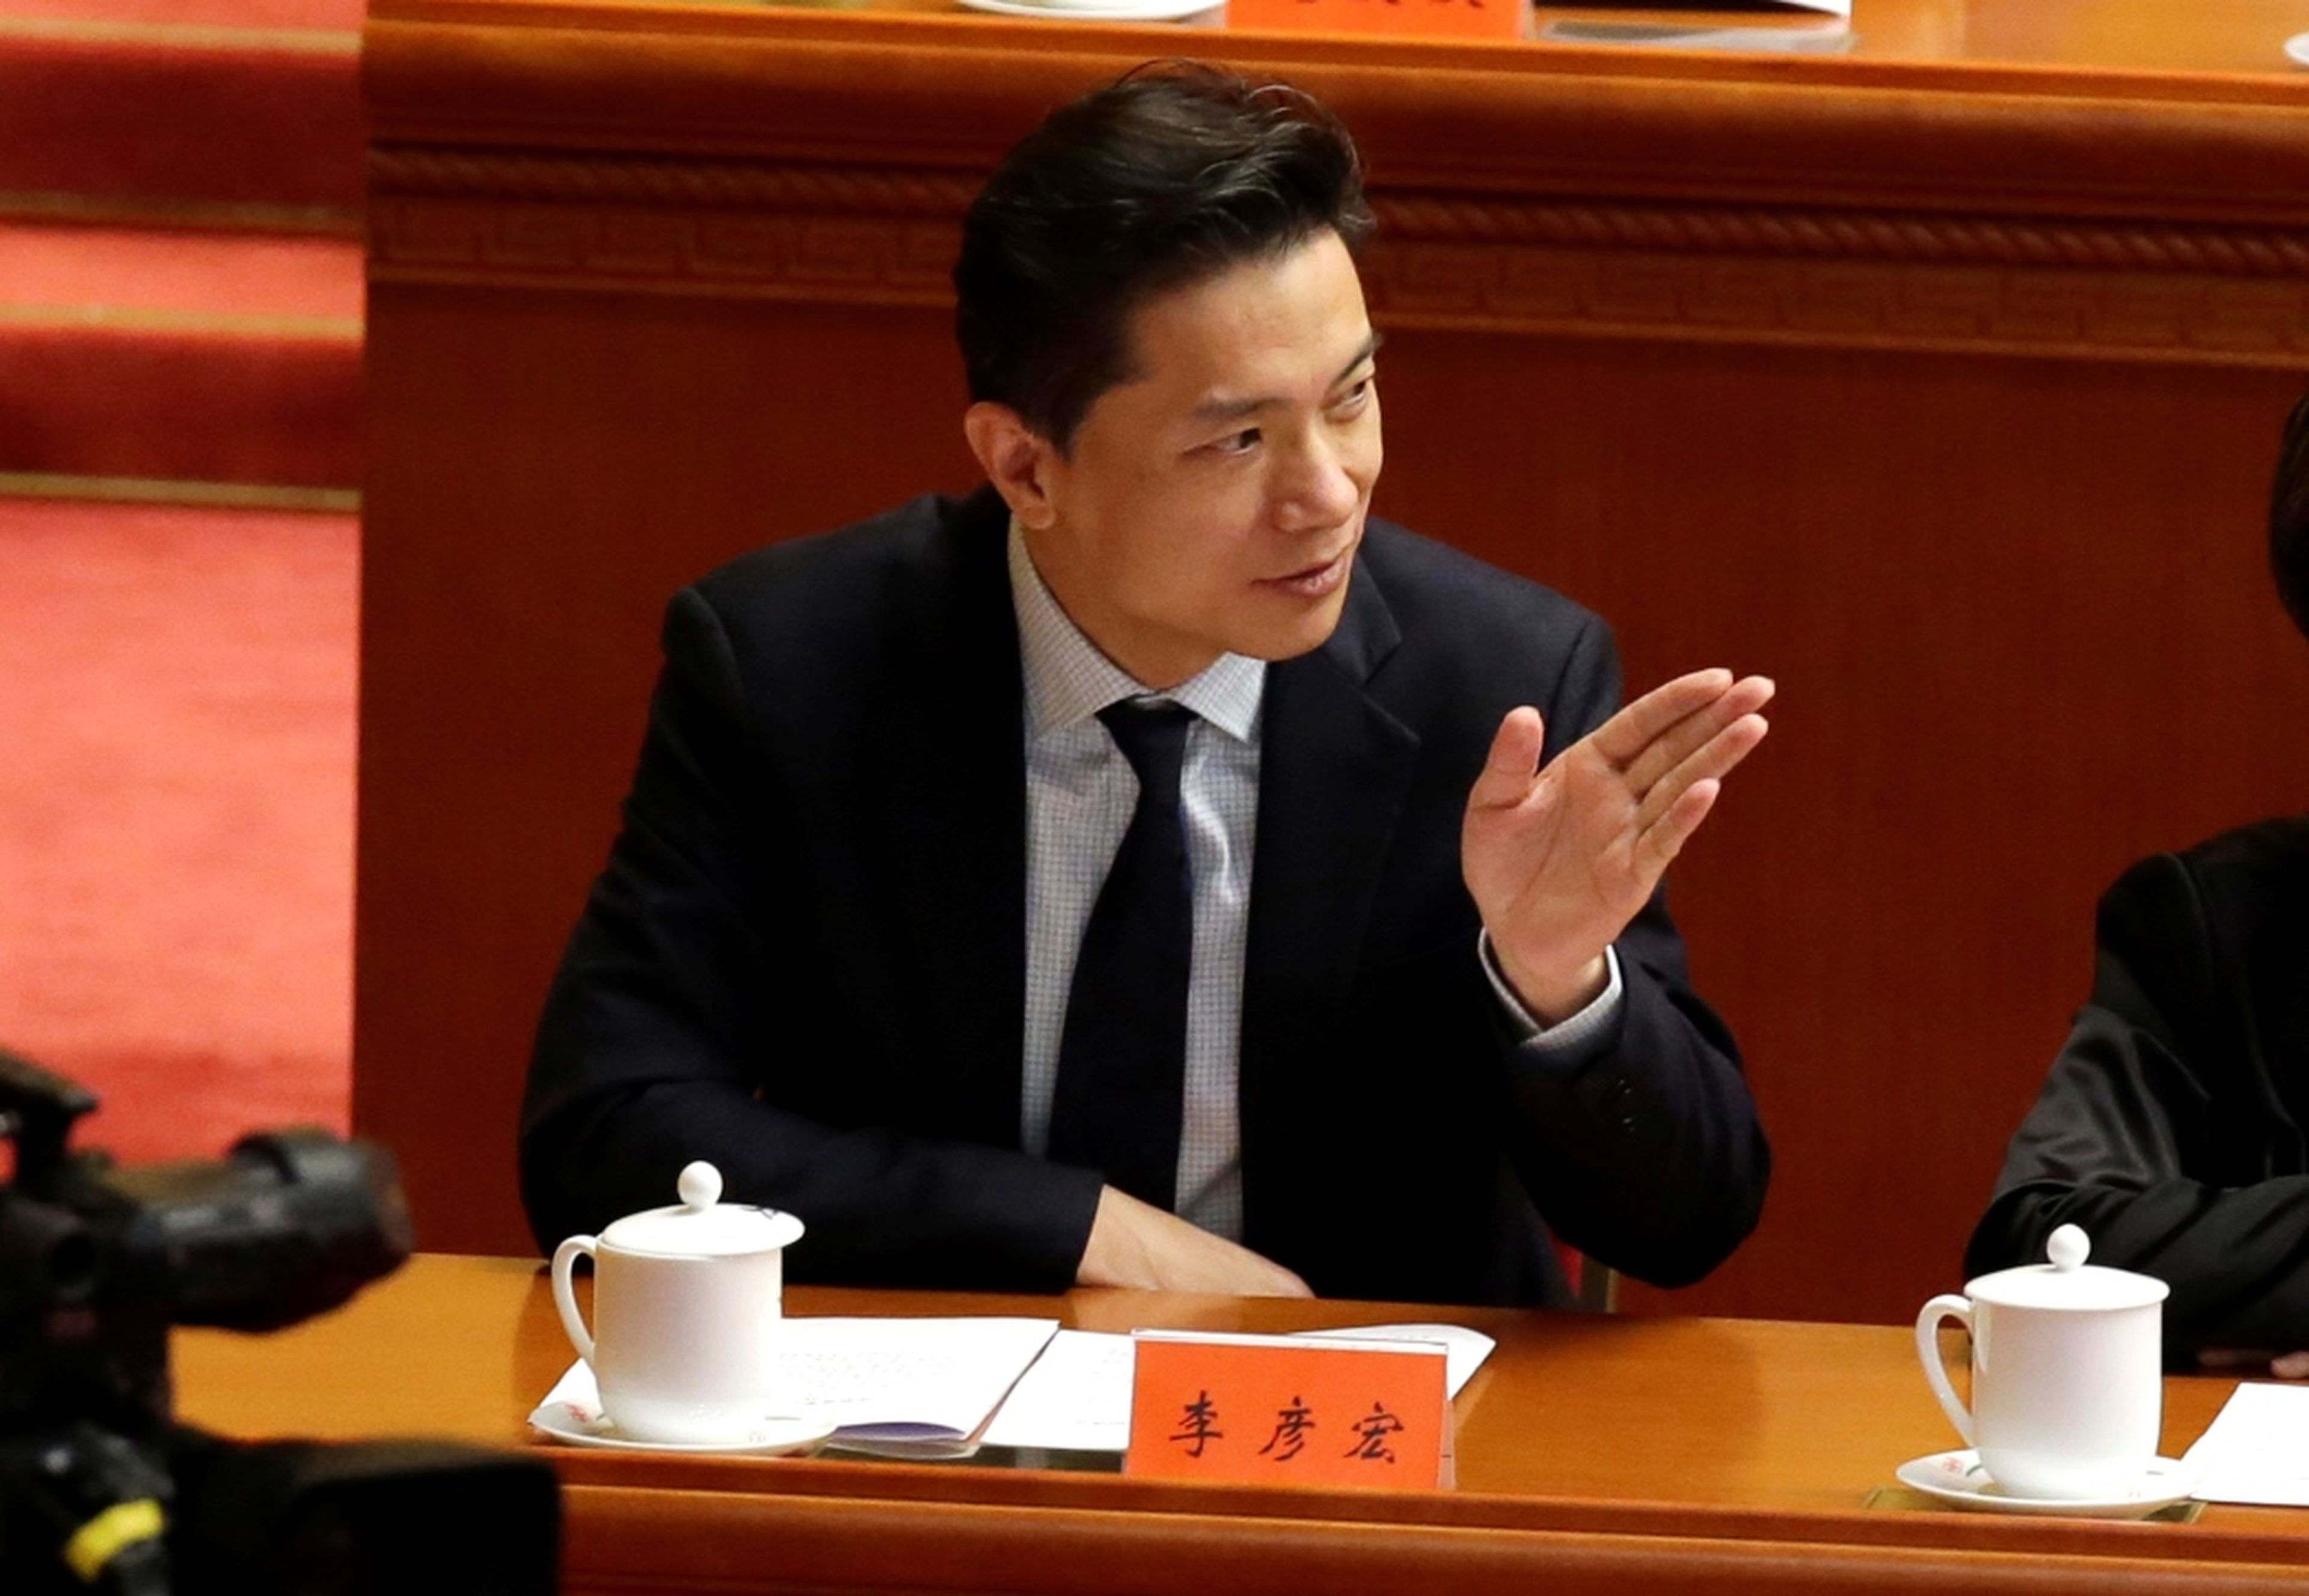 El CEO de Baidu, Robin Li, en un evento en Pekín en 2018.